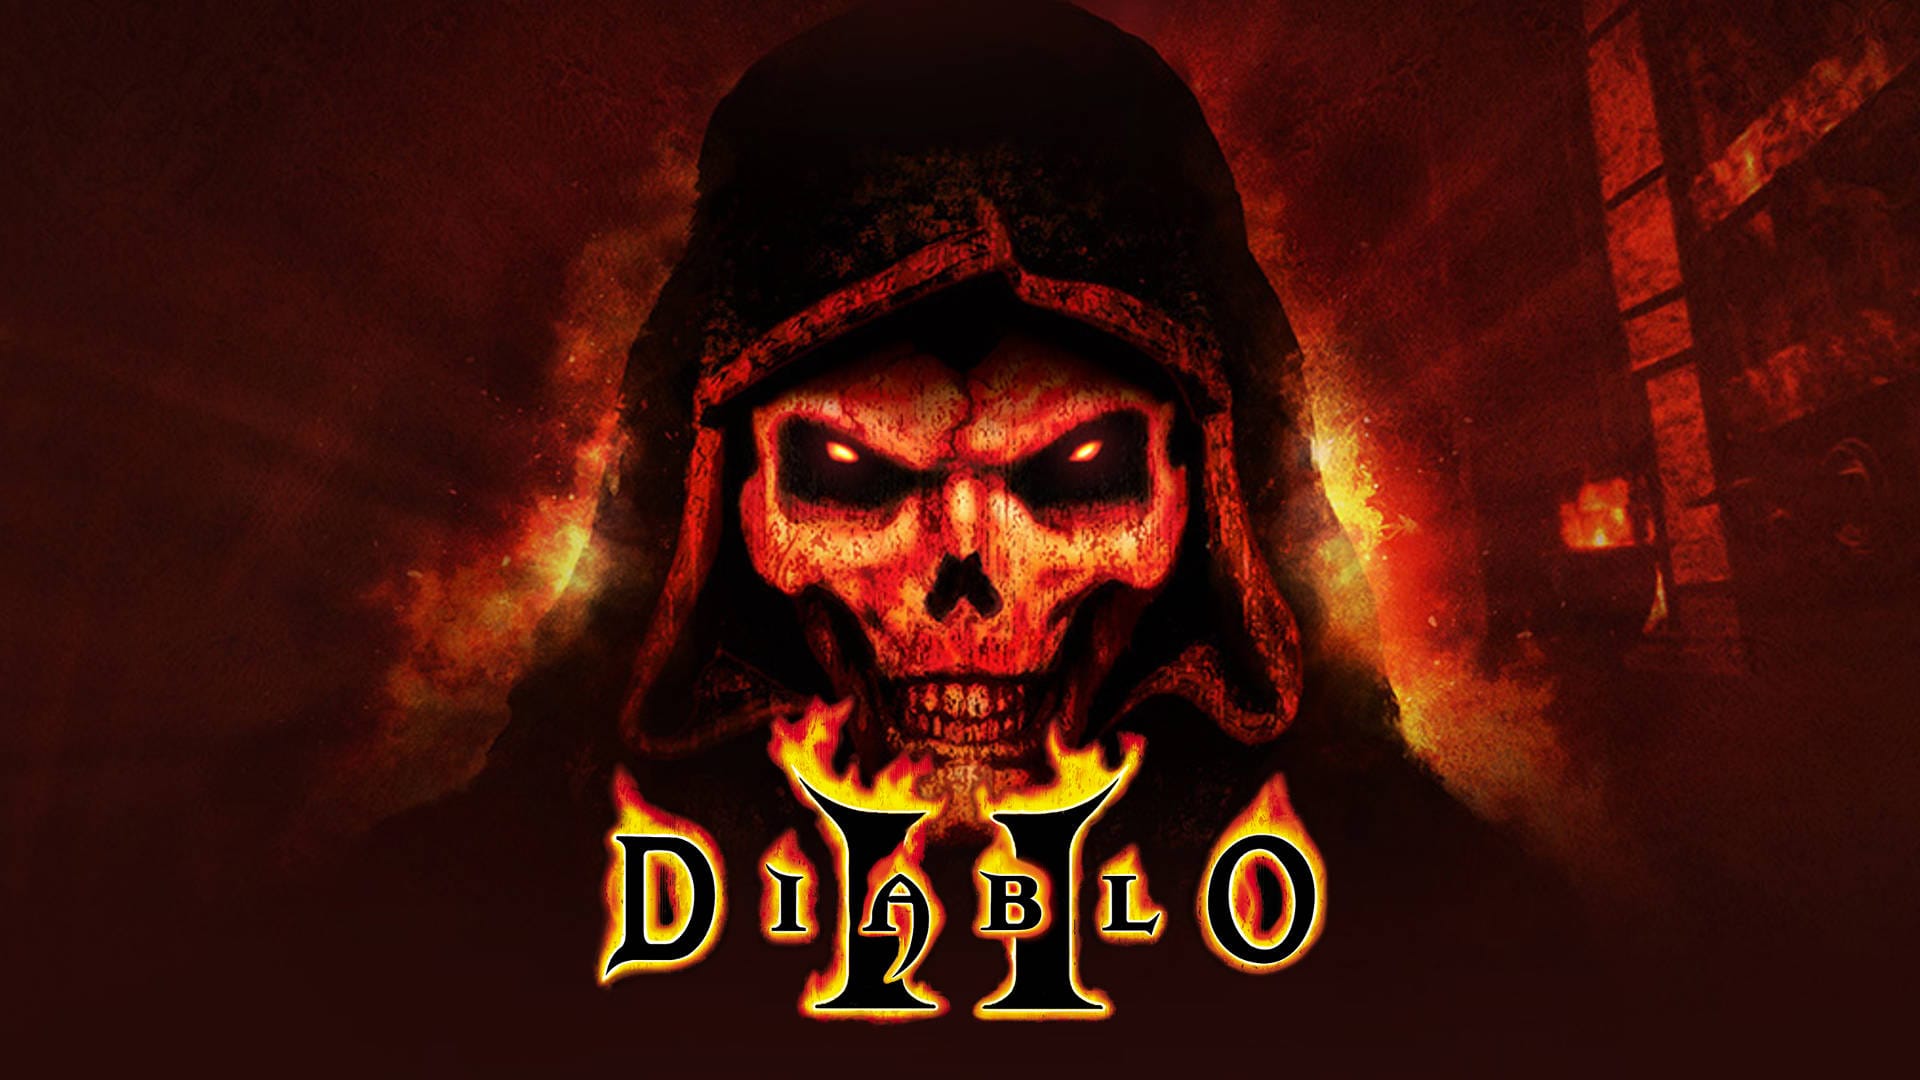 Diablo%202%20MMO%20ARPG%20cover.jpg?itok